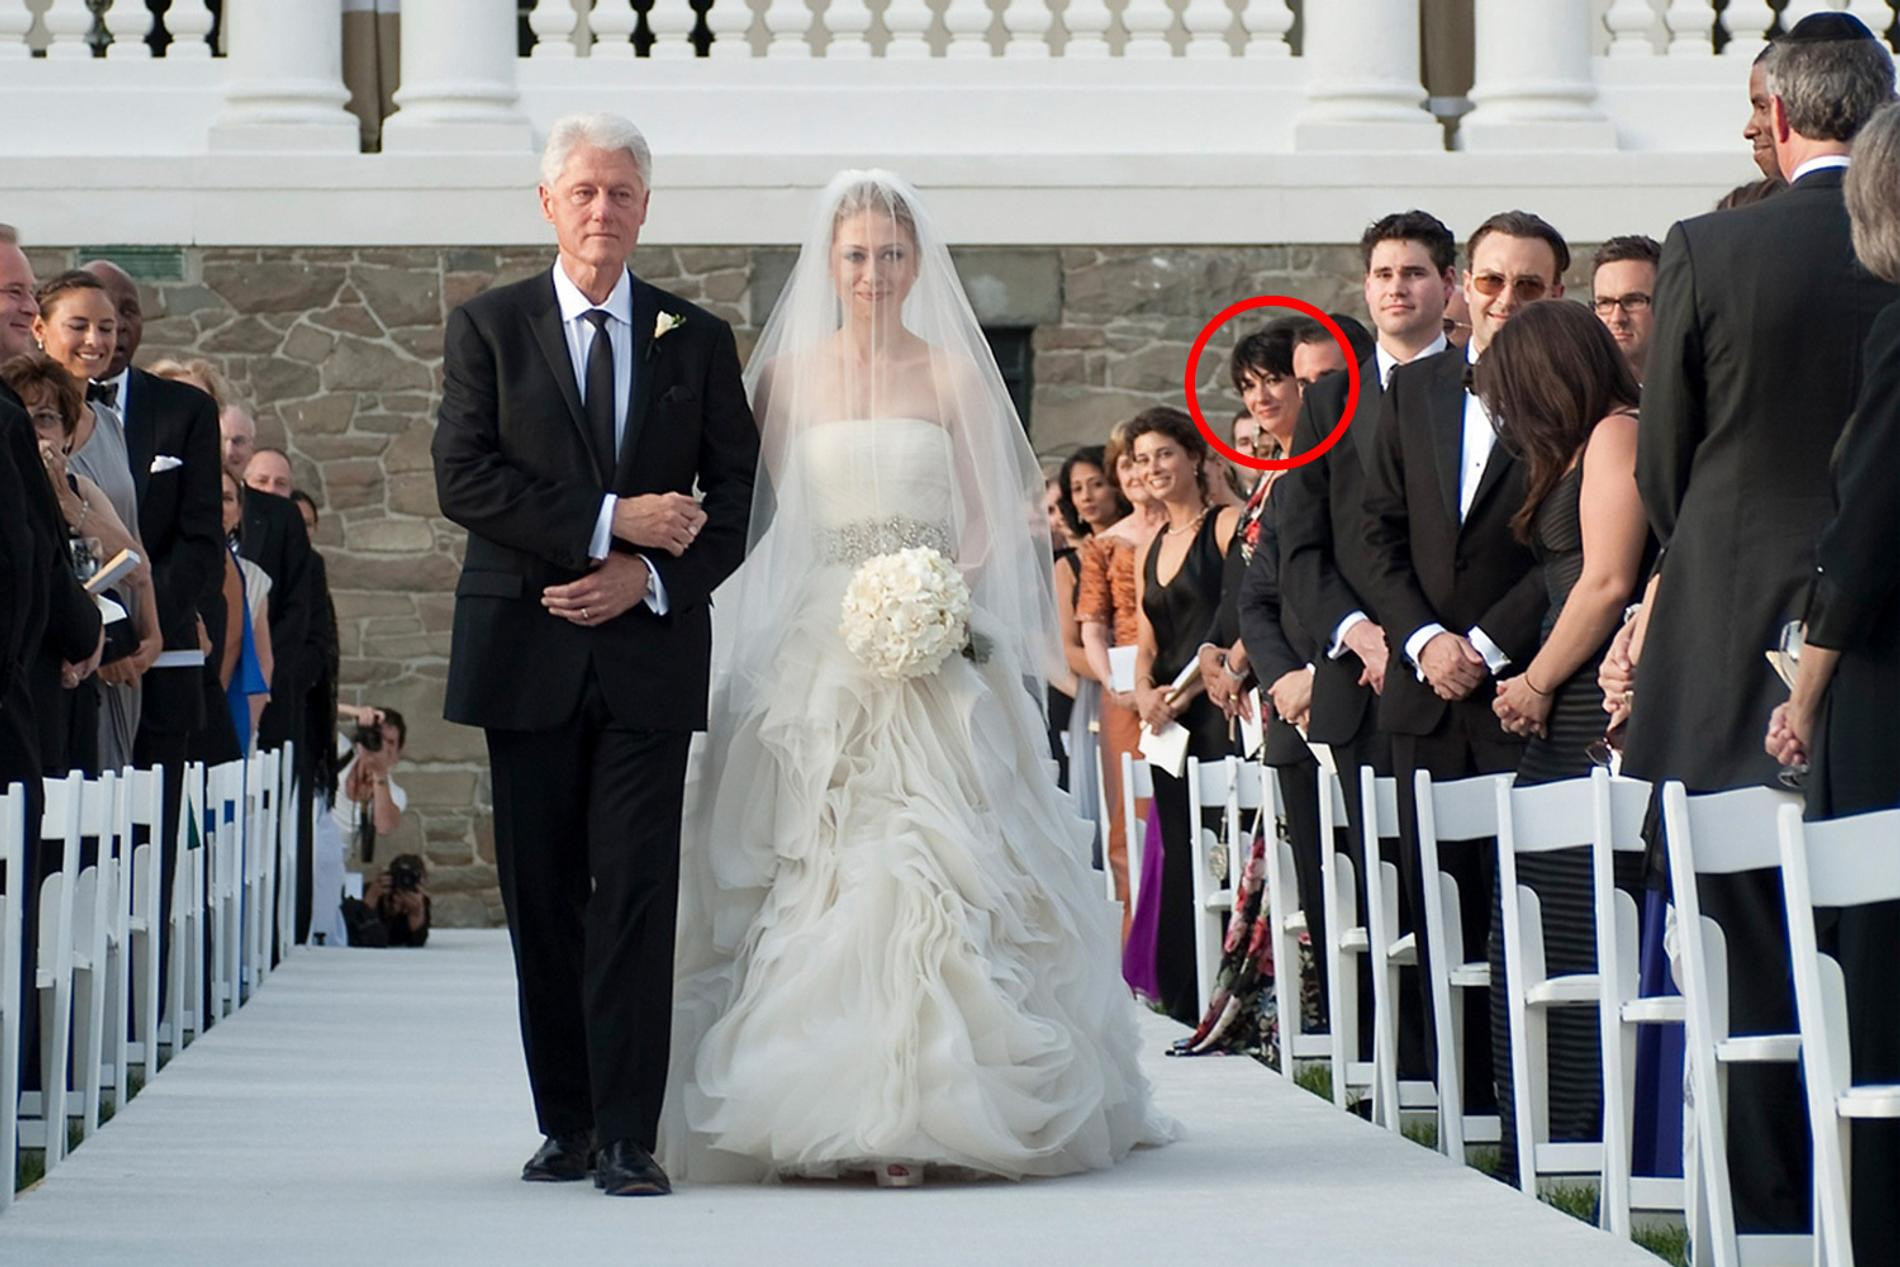 Гислейн Максвелл на свадьбе дочери Билла Клинтона
Фото © Getty Images